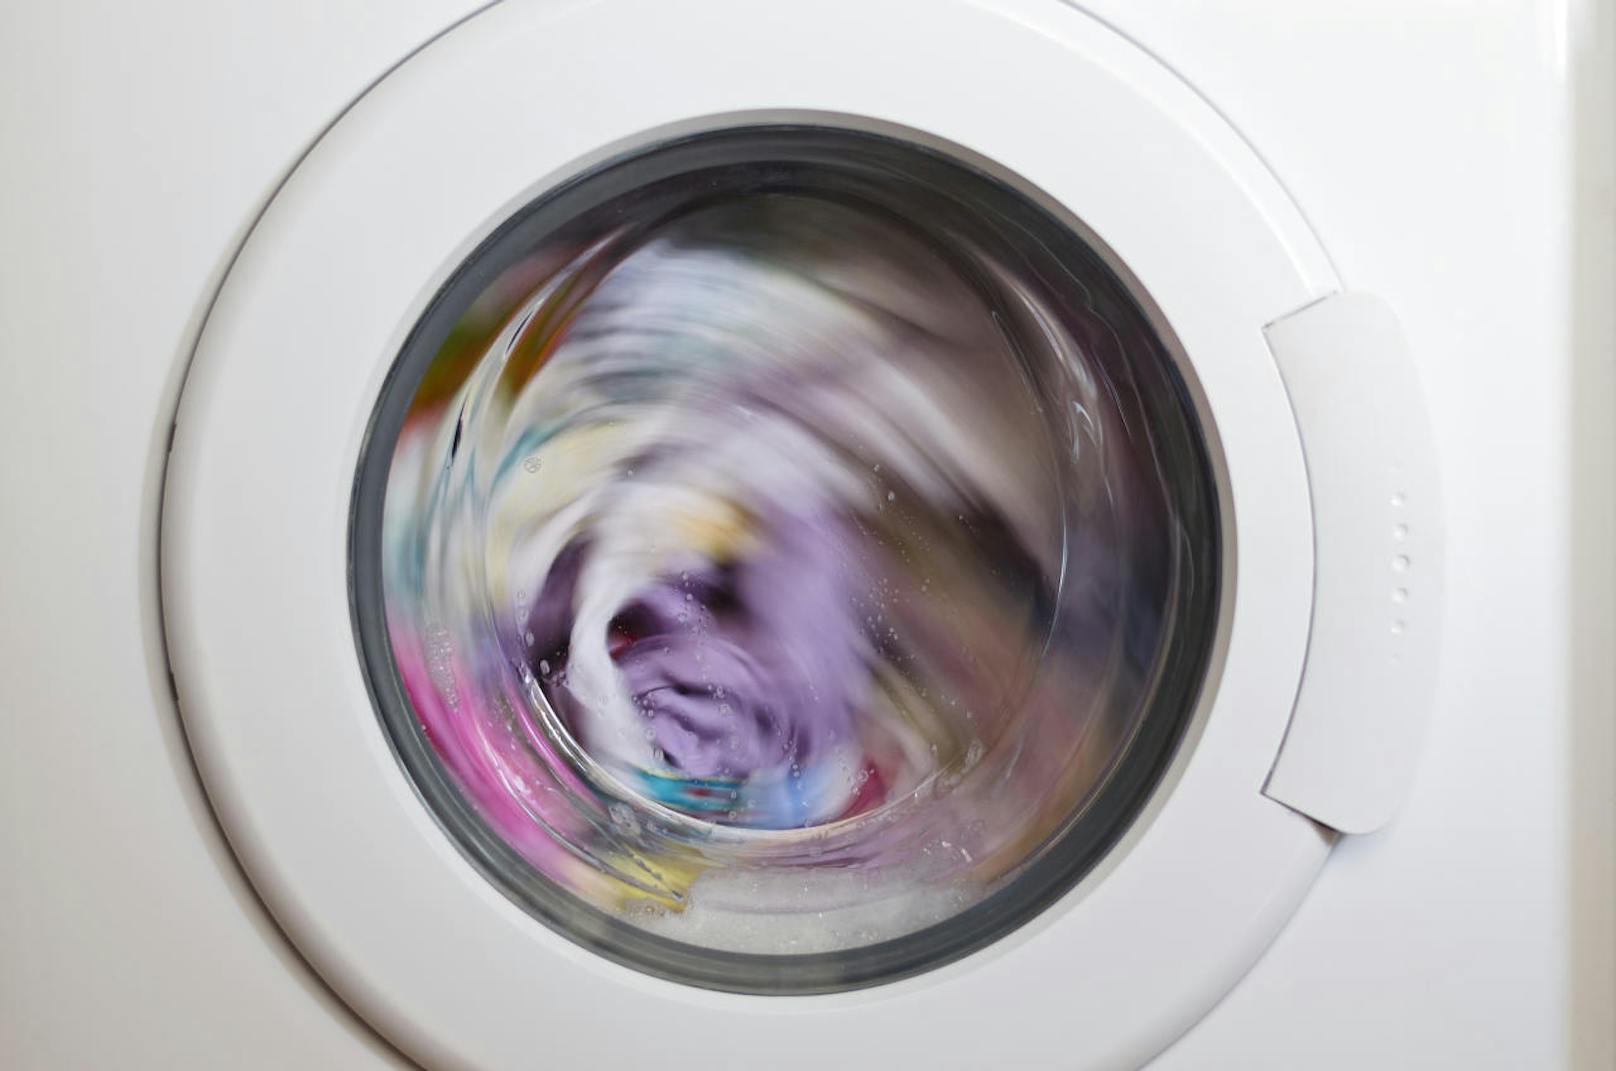 Sie waschen, die Maschine meldet eine einzige Minute Restzeit - und die dauert gefühlt ewig. Aber ist das nur ein Gefühl oder dauert die letzte Waschmaschinen-Minute wirklich länger? Wir haben bei Maschinenherstellern nachgefragt.